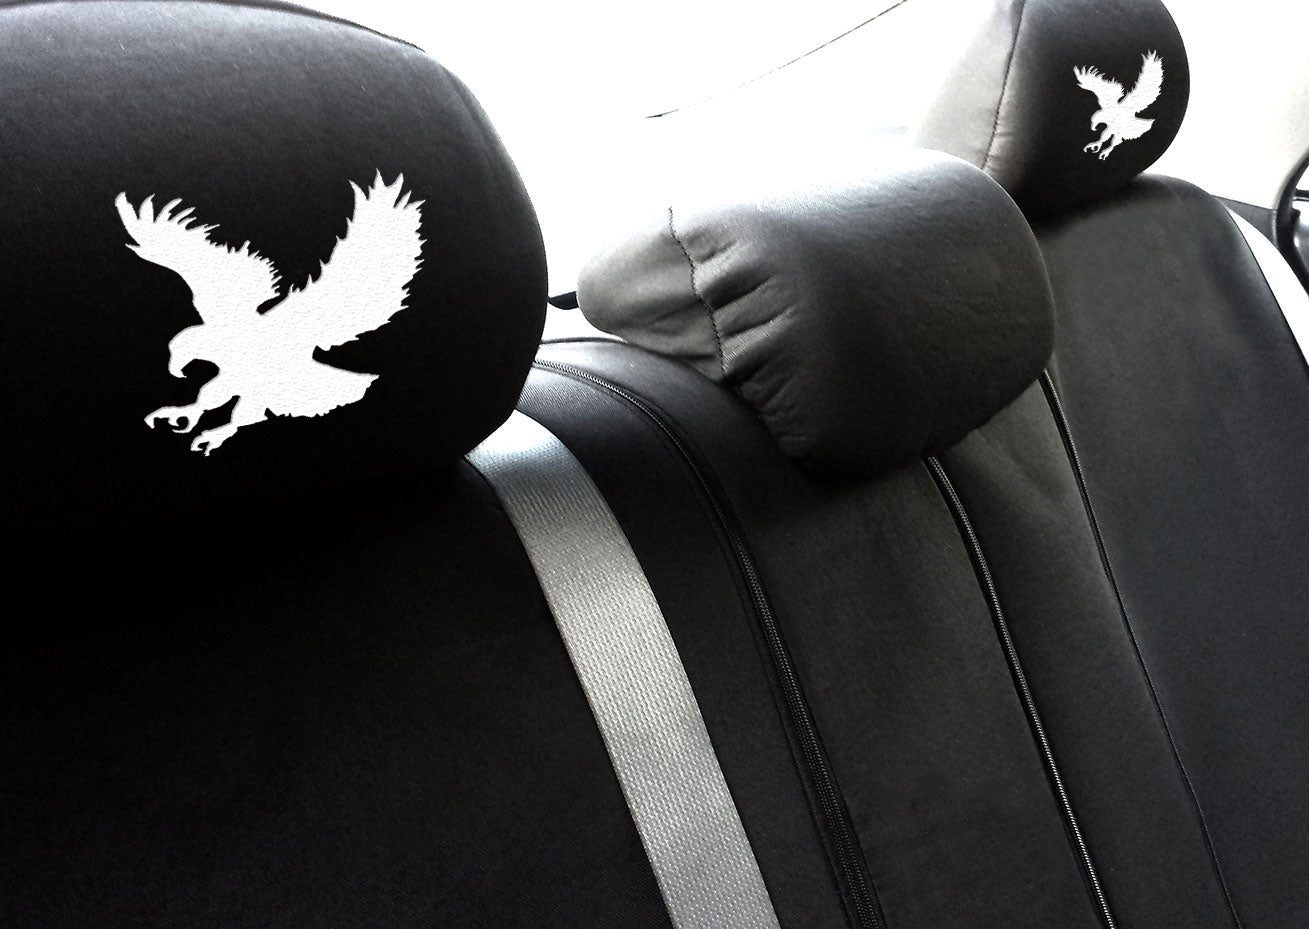 Embroidery Eagle Logo Design Auto Truck SUV Car Seat Headrest Cover Accessory 1 Piece - Yupbizauto